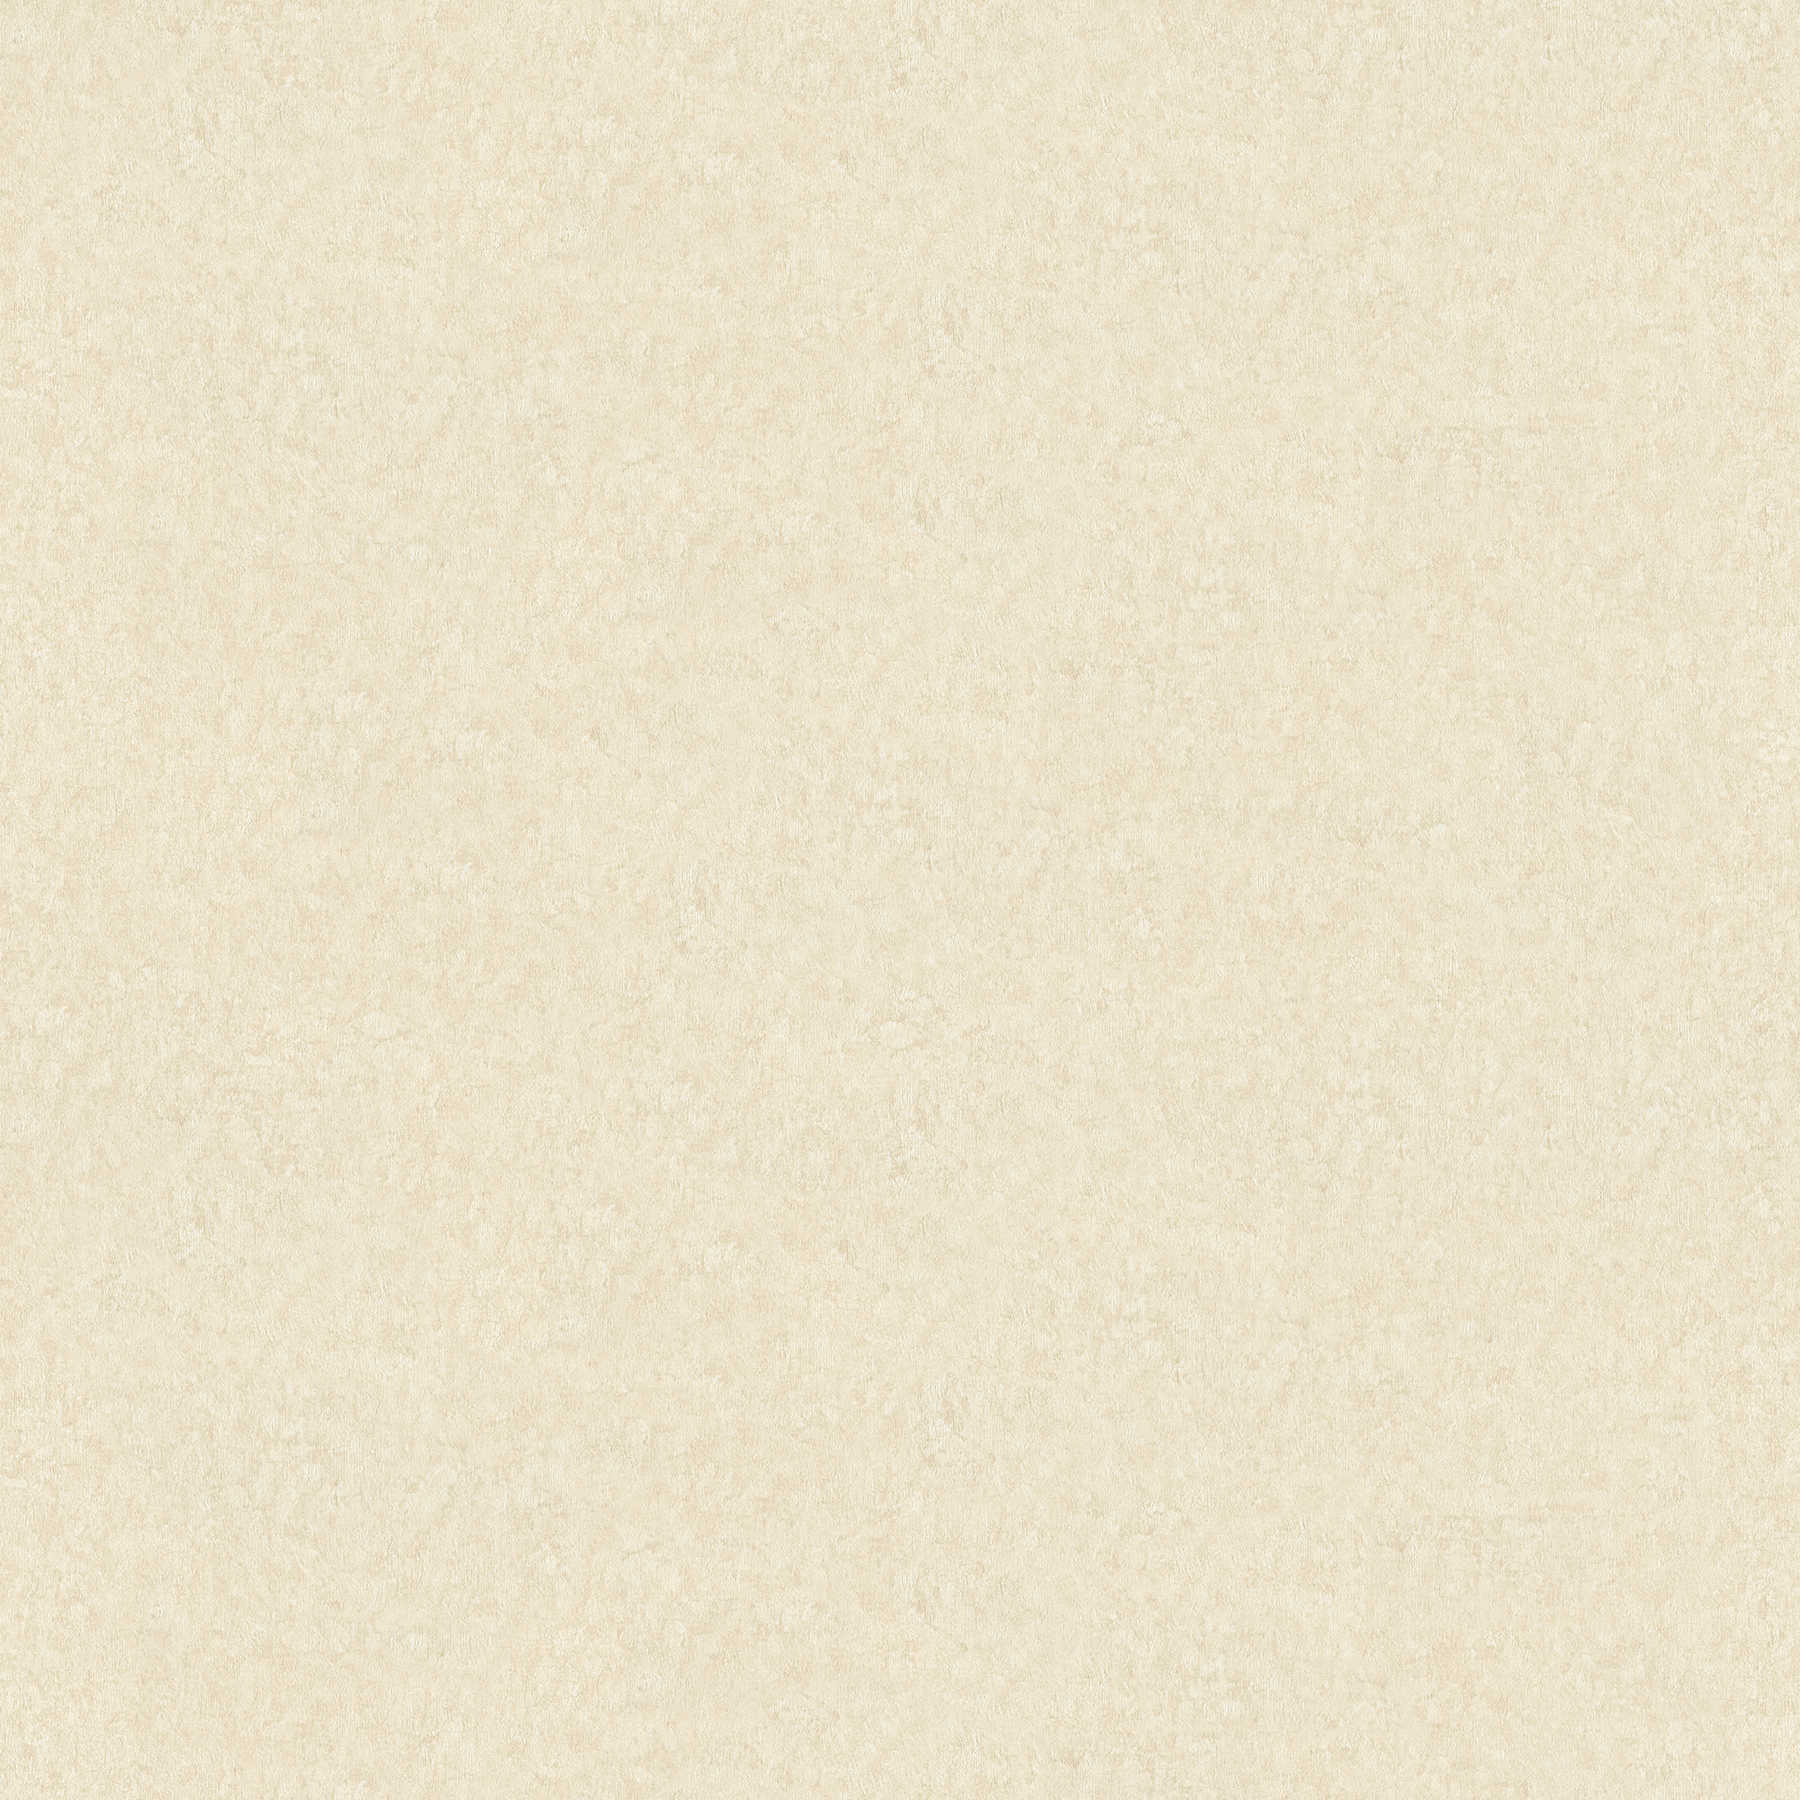         High quality wallpaper plain textile structure - beige
    